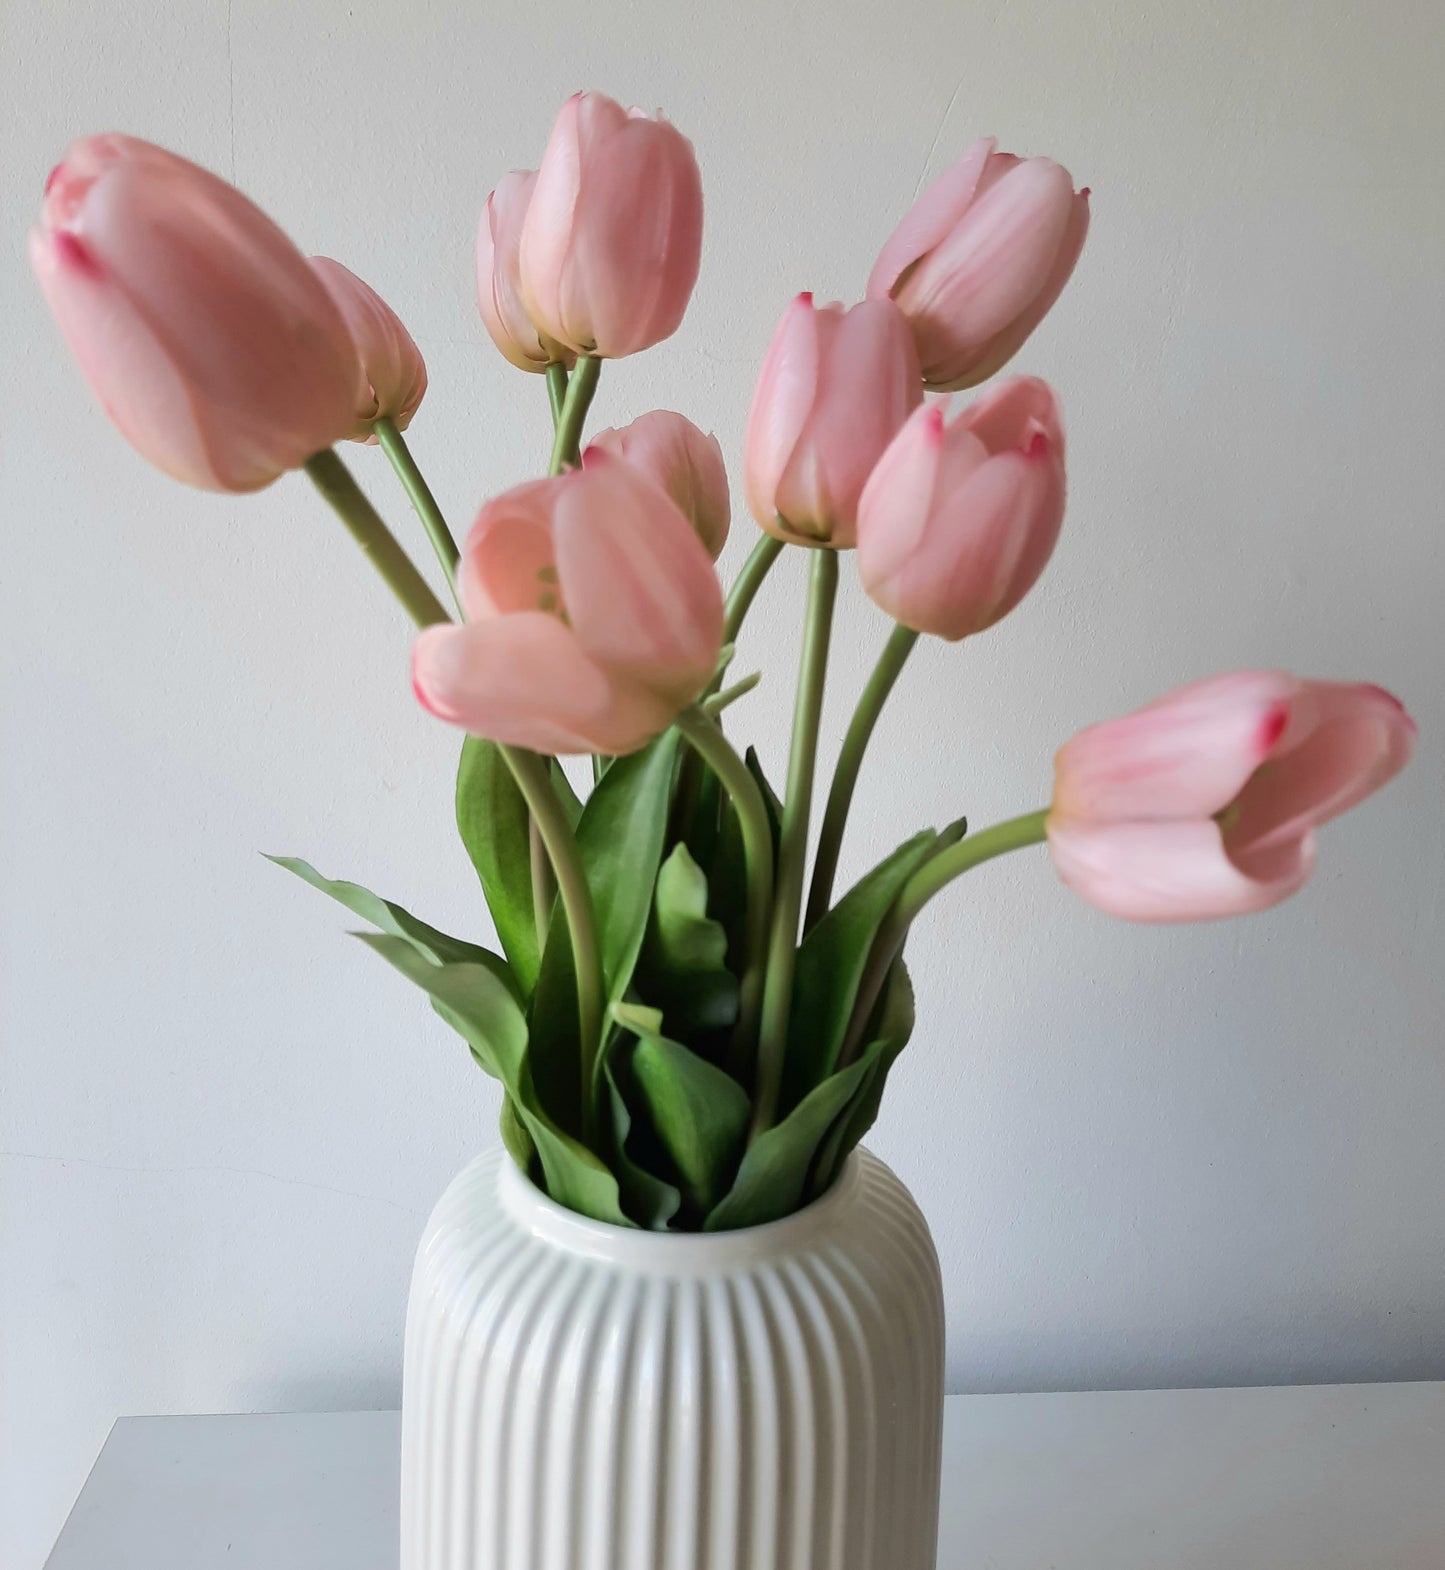 A legélethűbb rózsaszín gumi tulipán művirág csokor